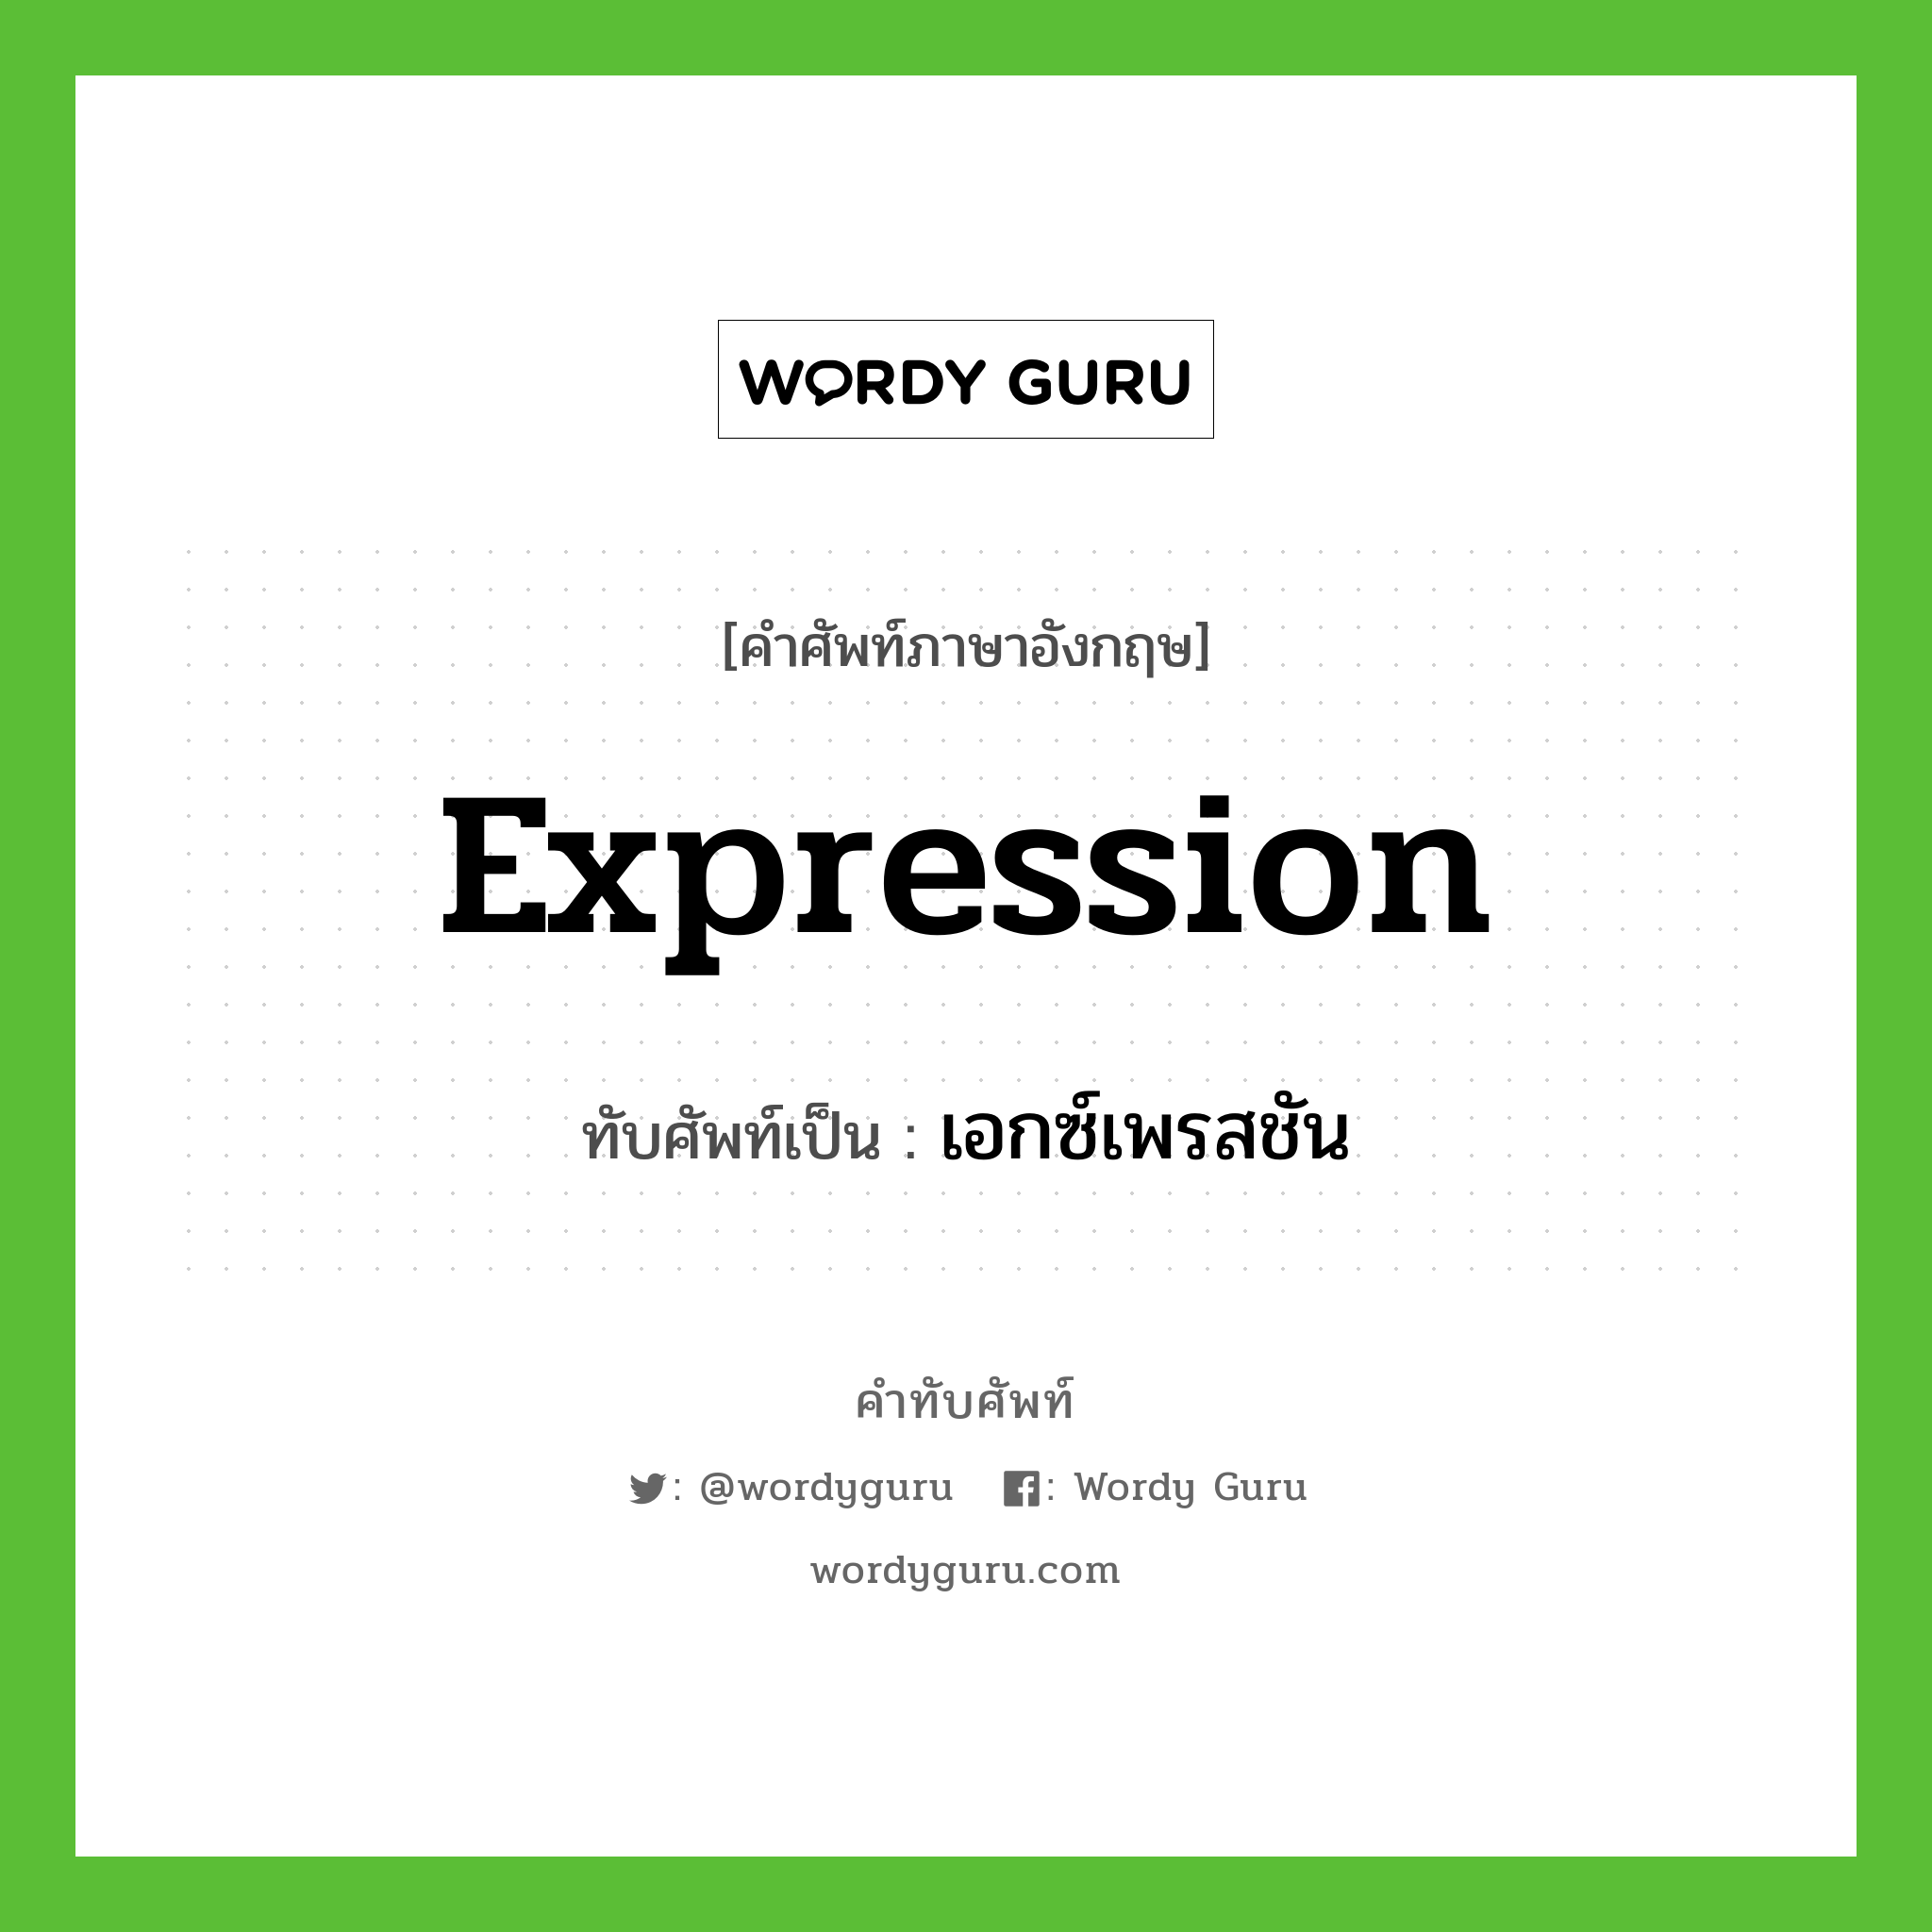 expression เขียนเป็นคำไทยว่าอะไร?, คำศัพท์ภาษาอังกฤษ expression ทับศัพท์เป็น เอกซ์เพรสชัน